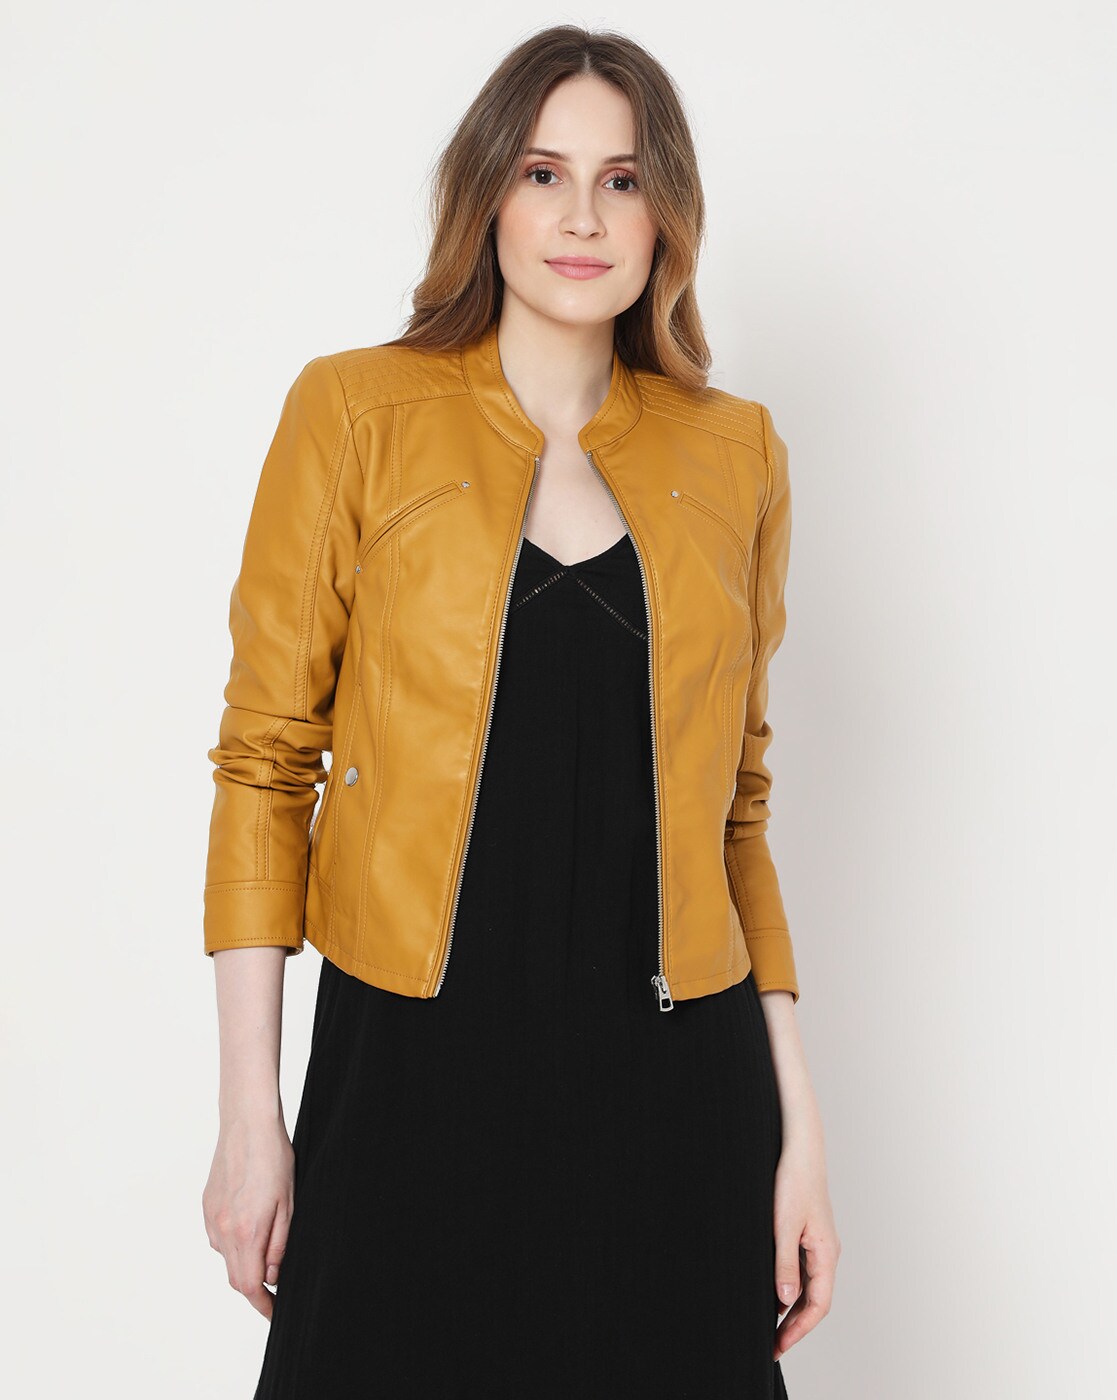 Buy Mustard Yellow Jackets & Coats for Vero Moda | Ajio.com